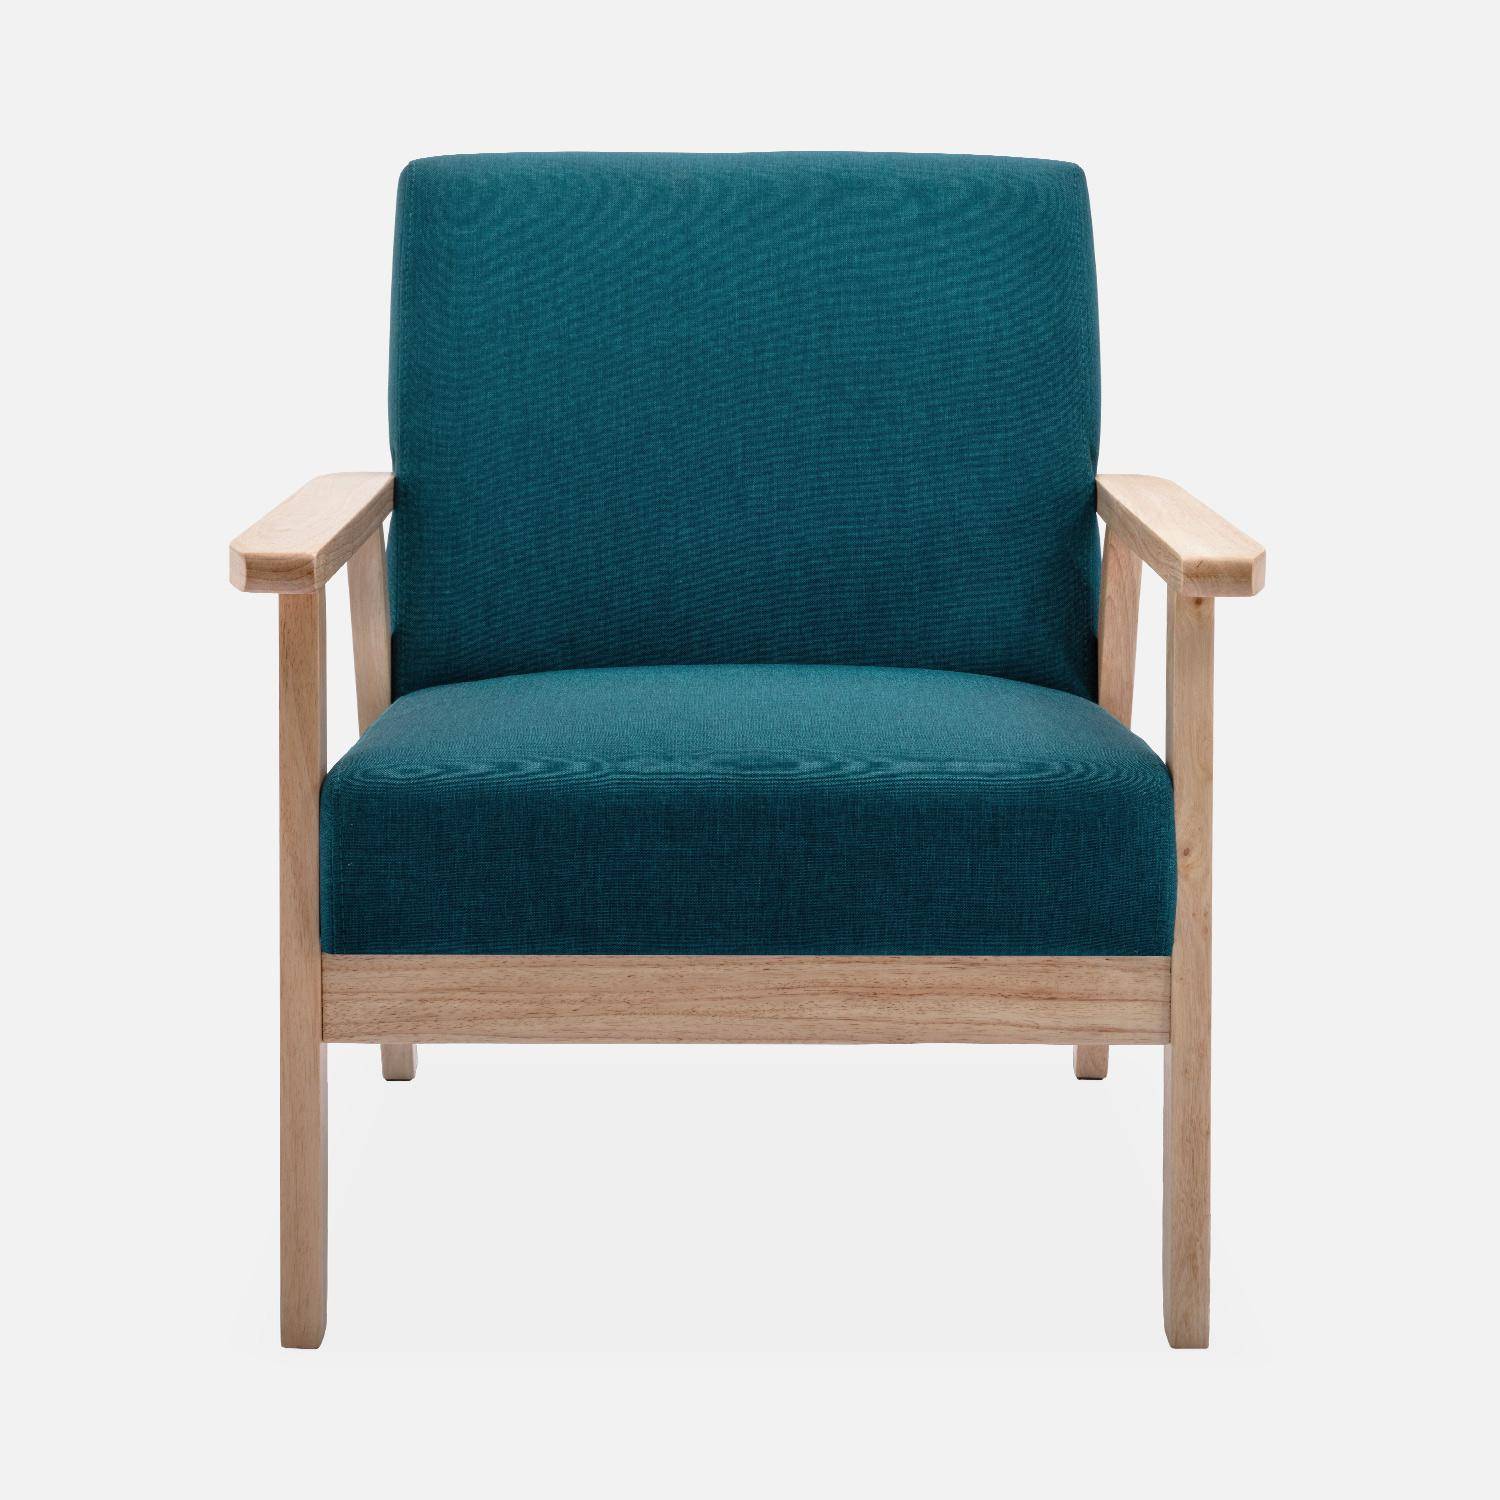 Banco y sillón escandinavos de madera y tela azul petróleo L 114 x A 69,5 x Alt 73cm,sweeek,Photo4